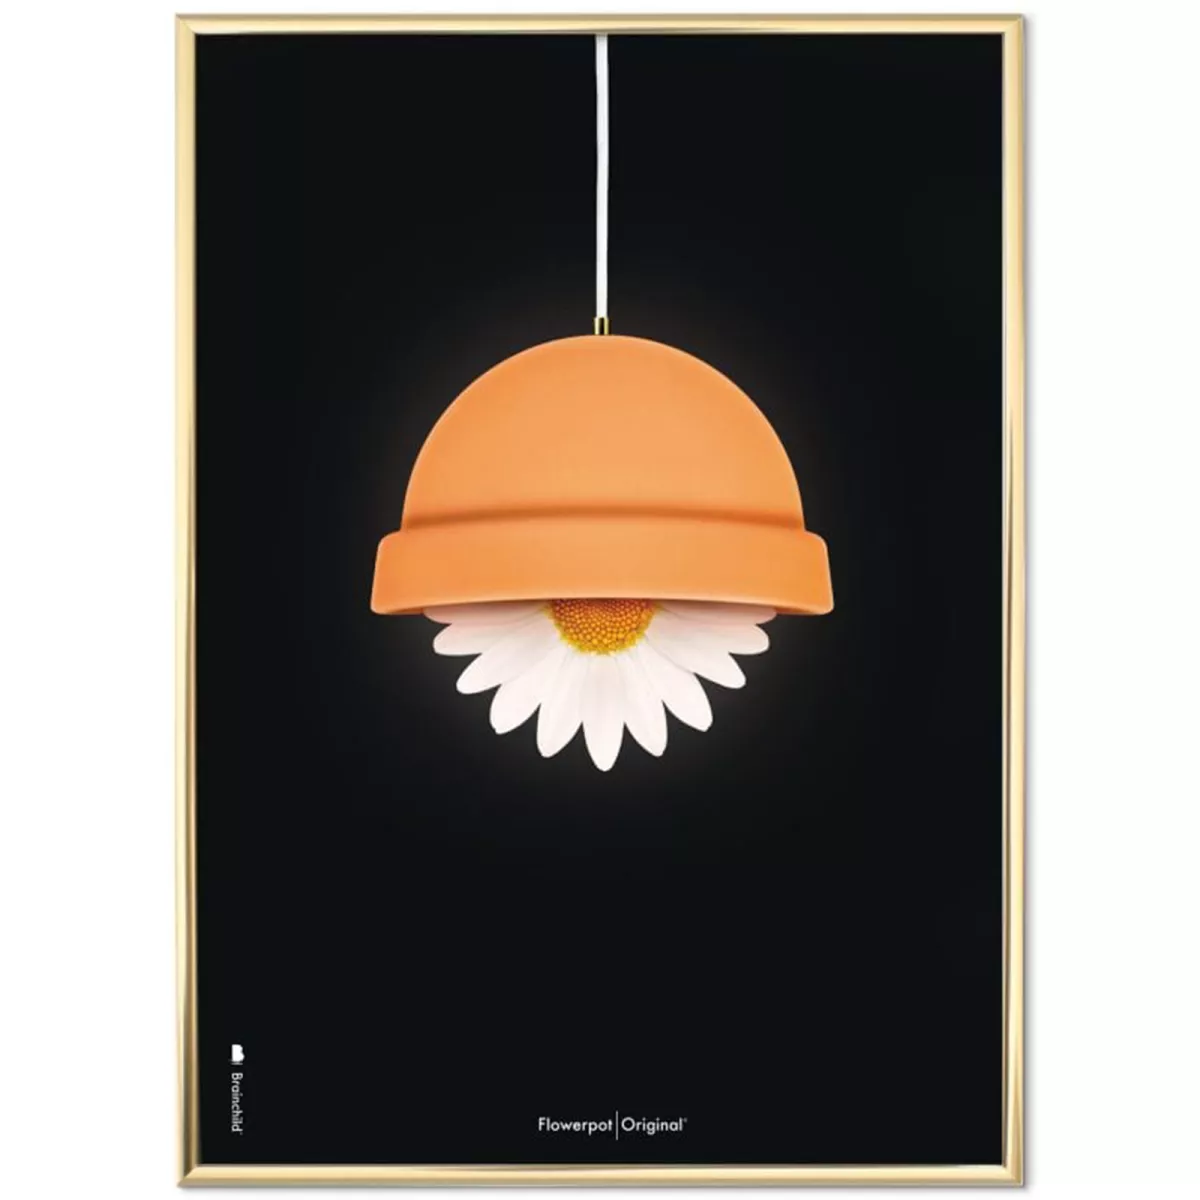 #1 - Plakat med Flowerpot - 50 x 70 cm